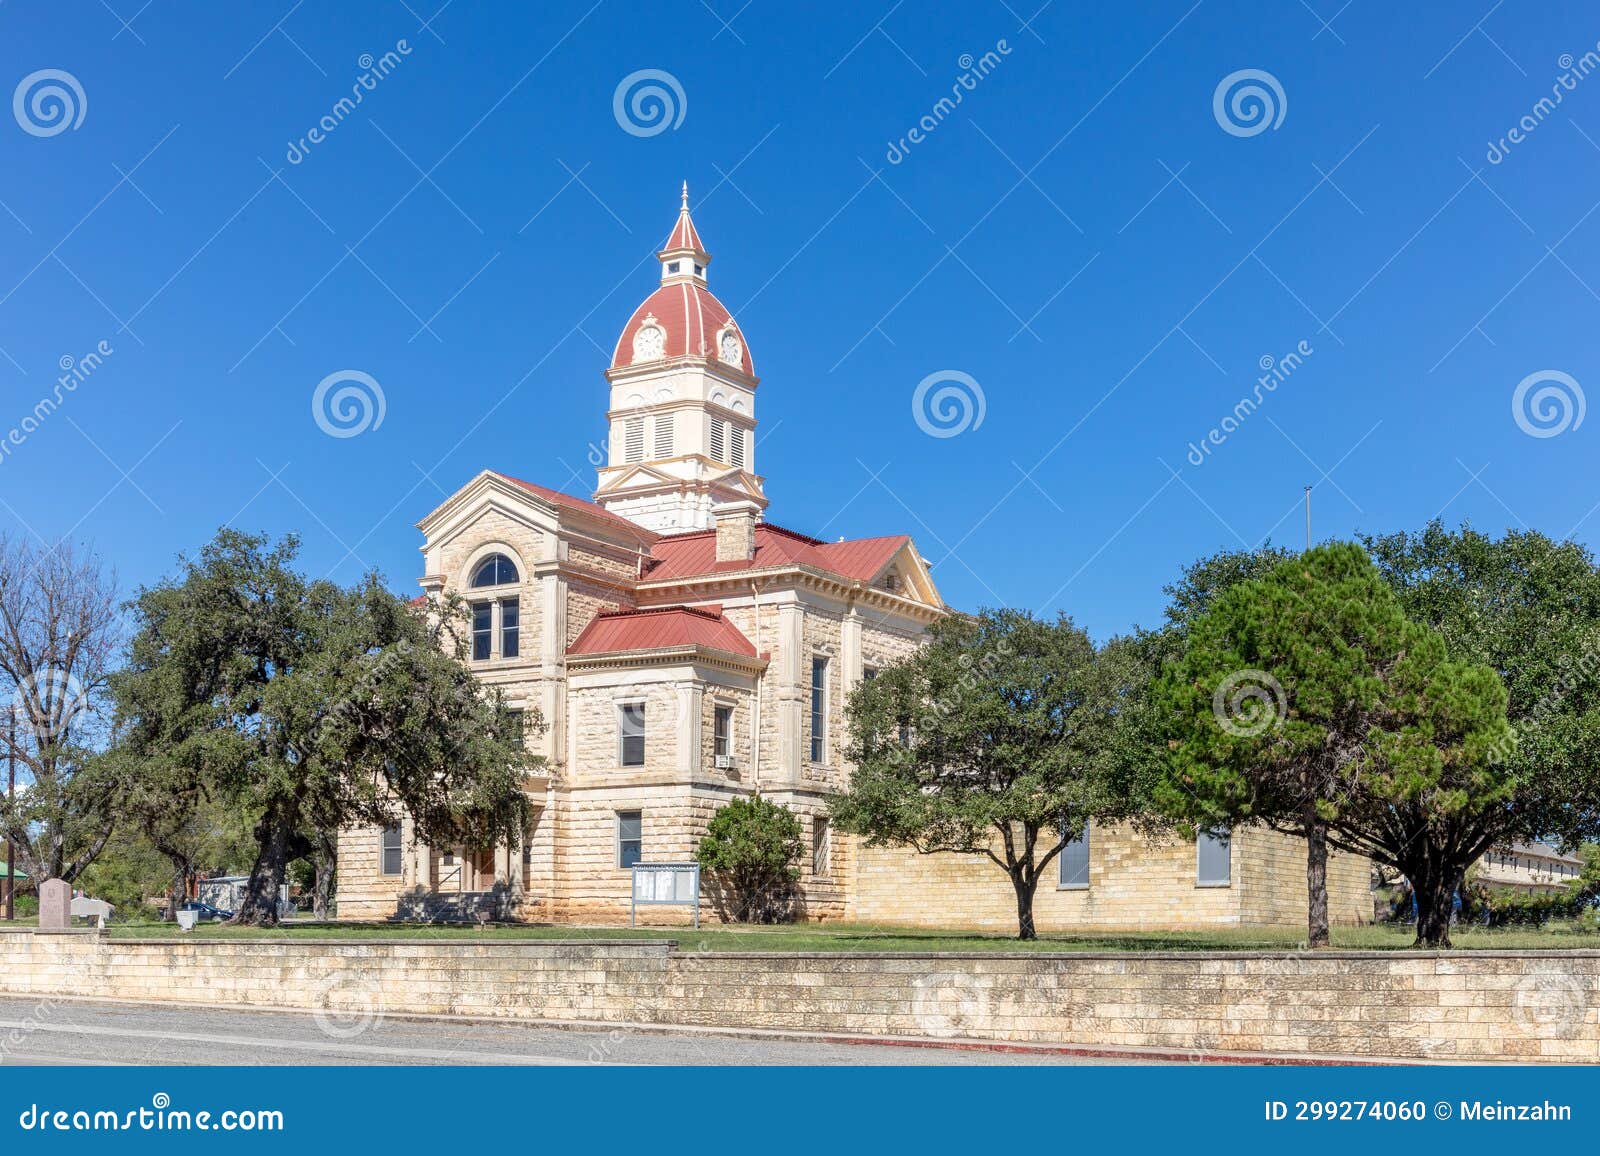 scenic historic city hall of bandera, texas